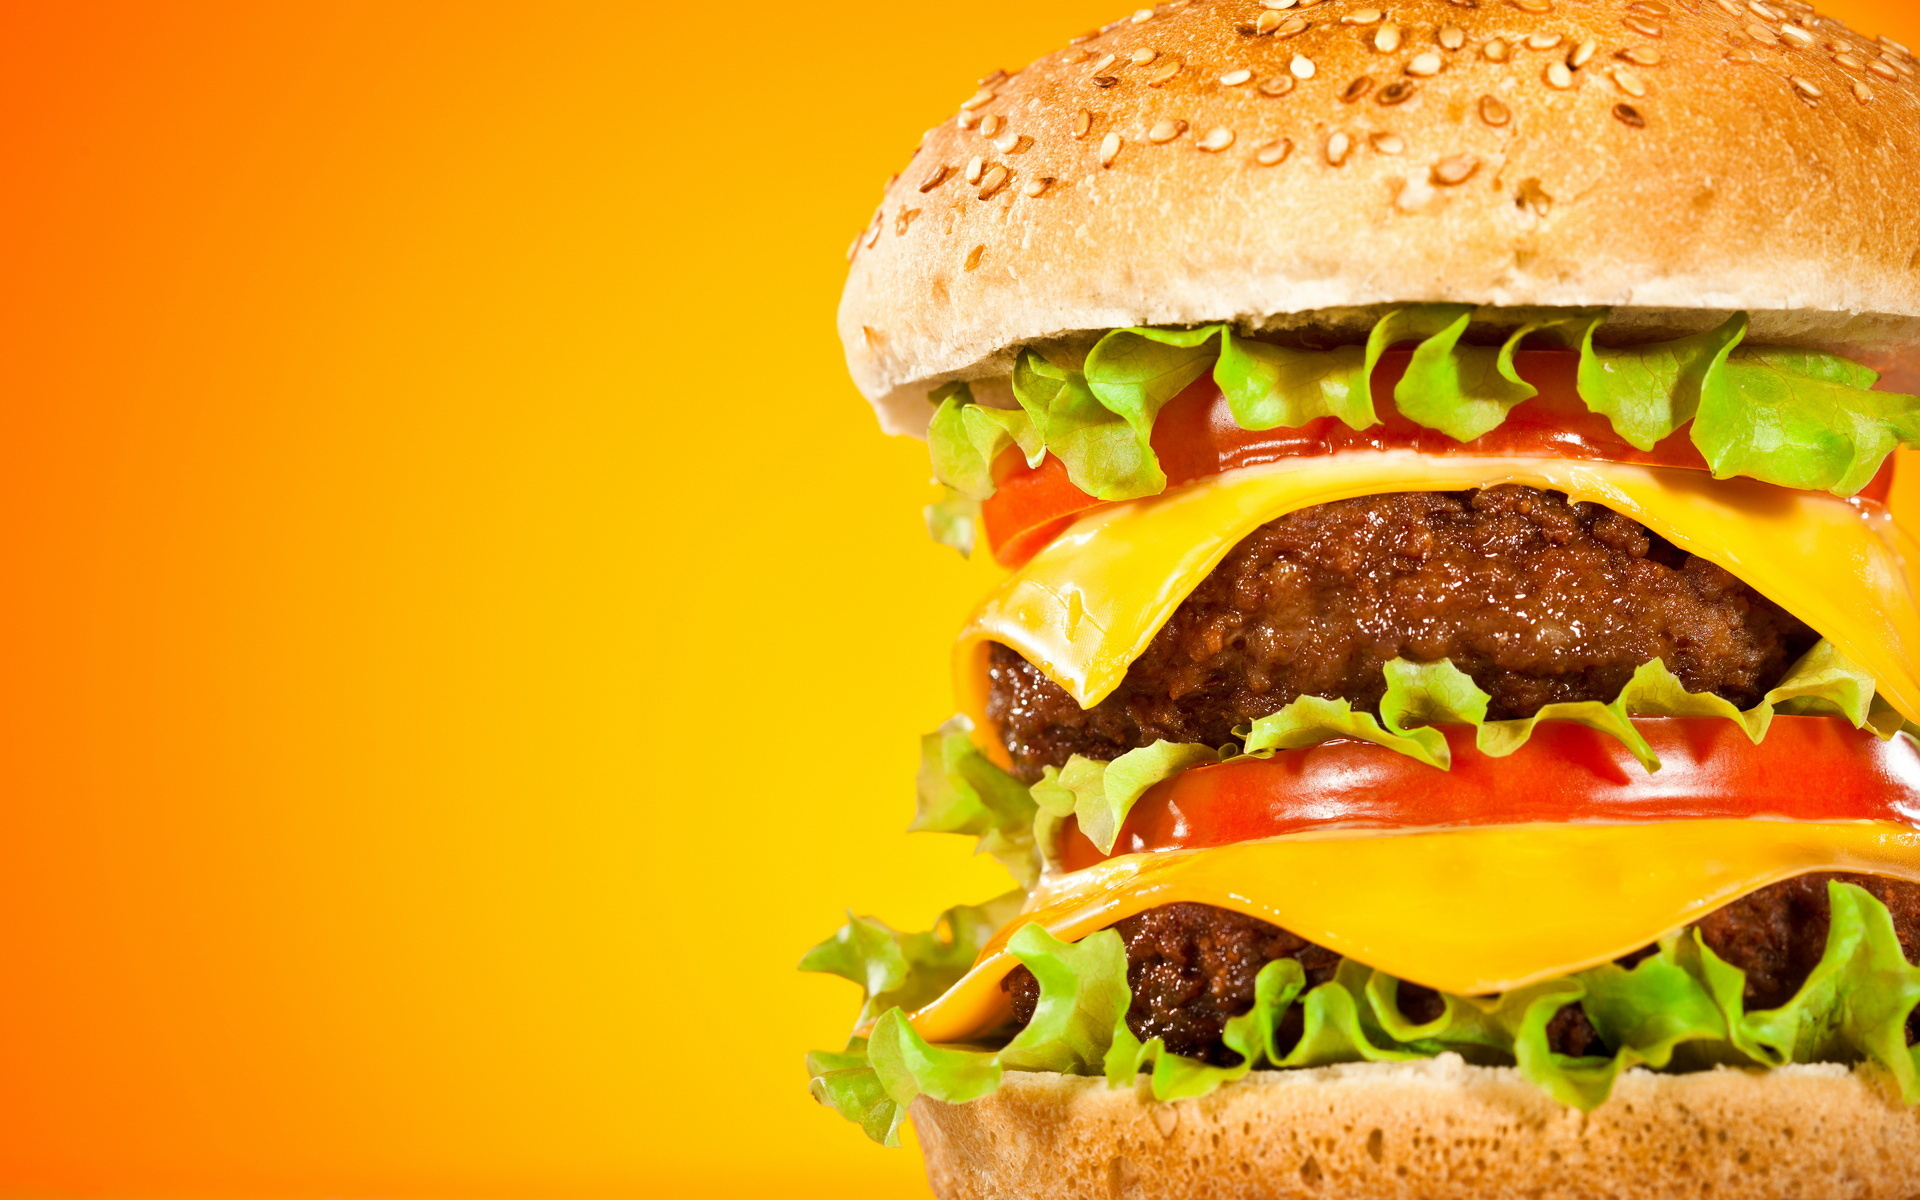 Burger Wallpaper Images  Free Download on Freepik